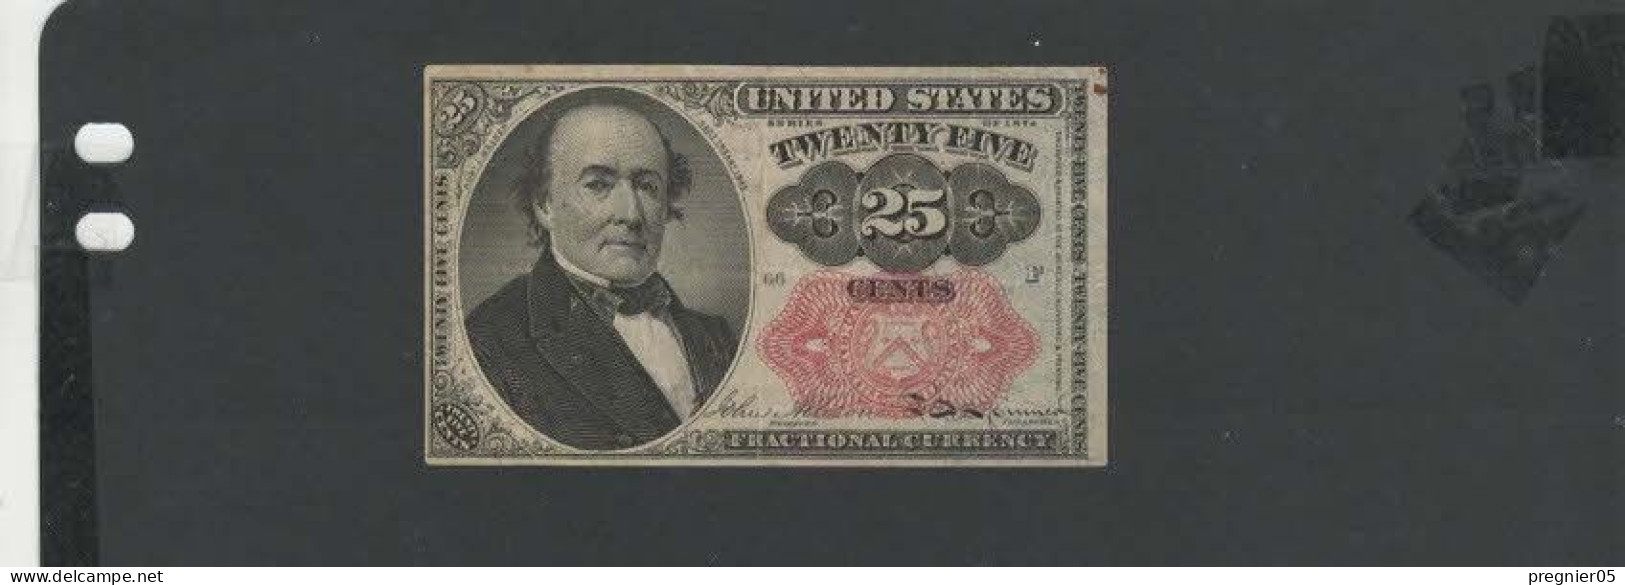 USA - Billet 25 Cents 1874  SUP/XF  P.123 - Billets Des États-Unis (1862-1923)